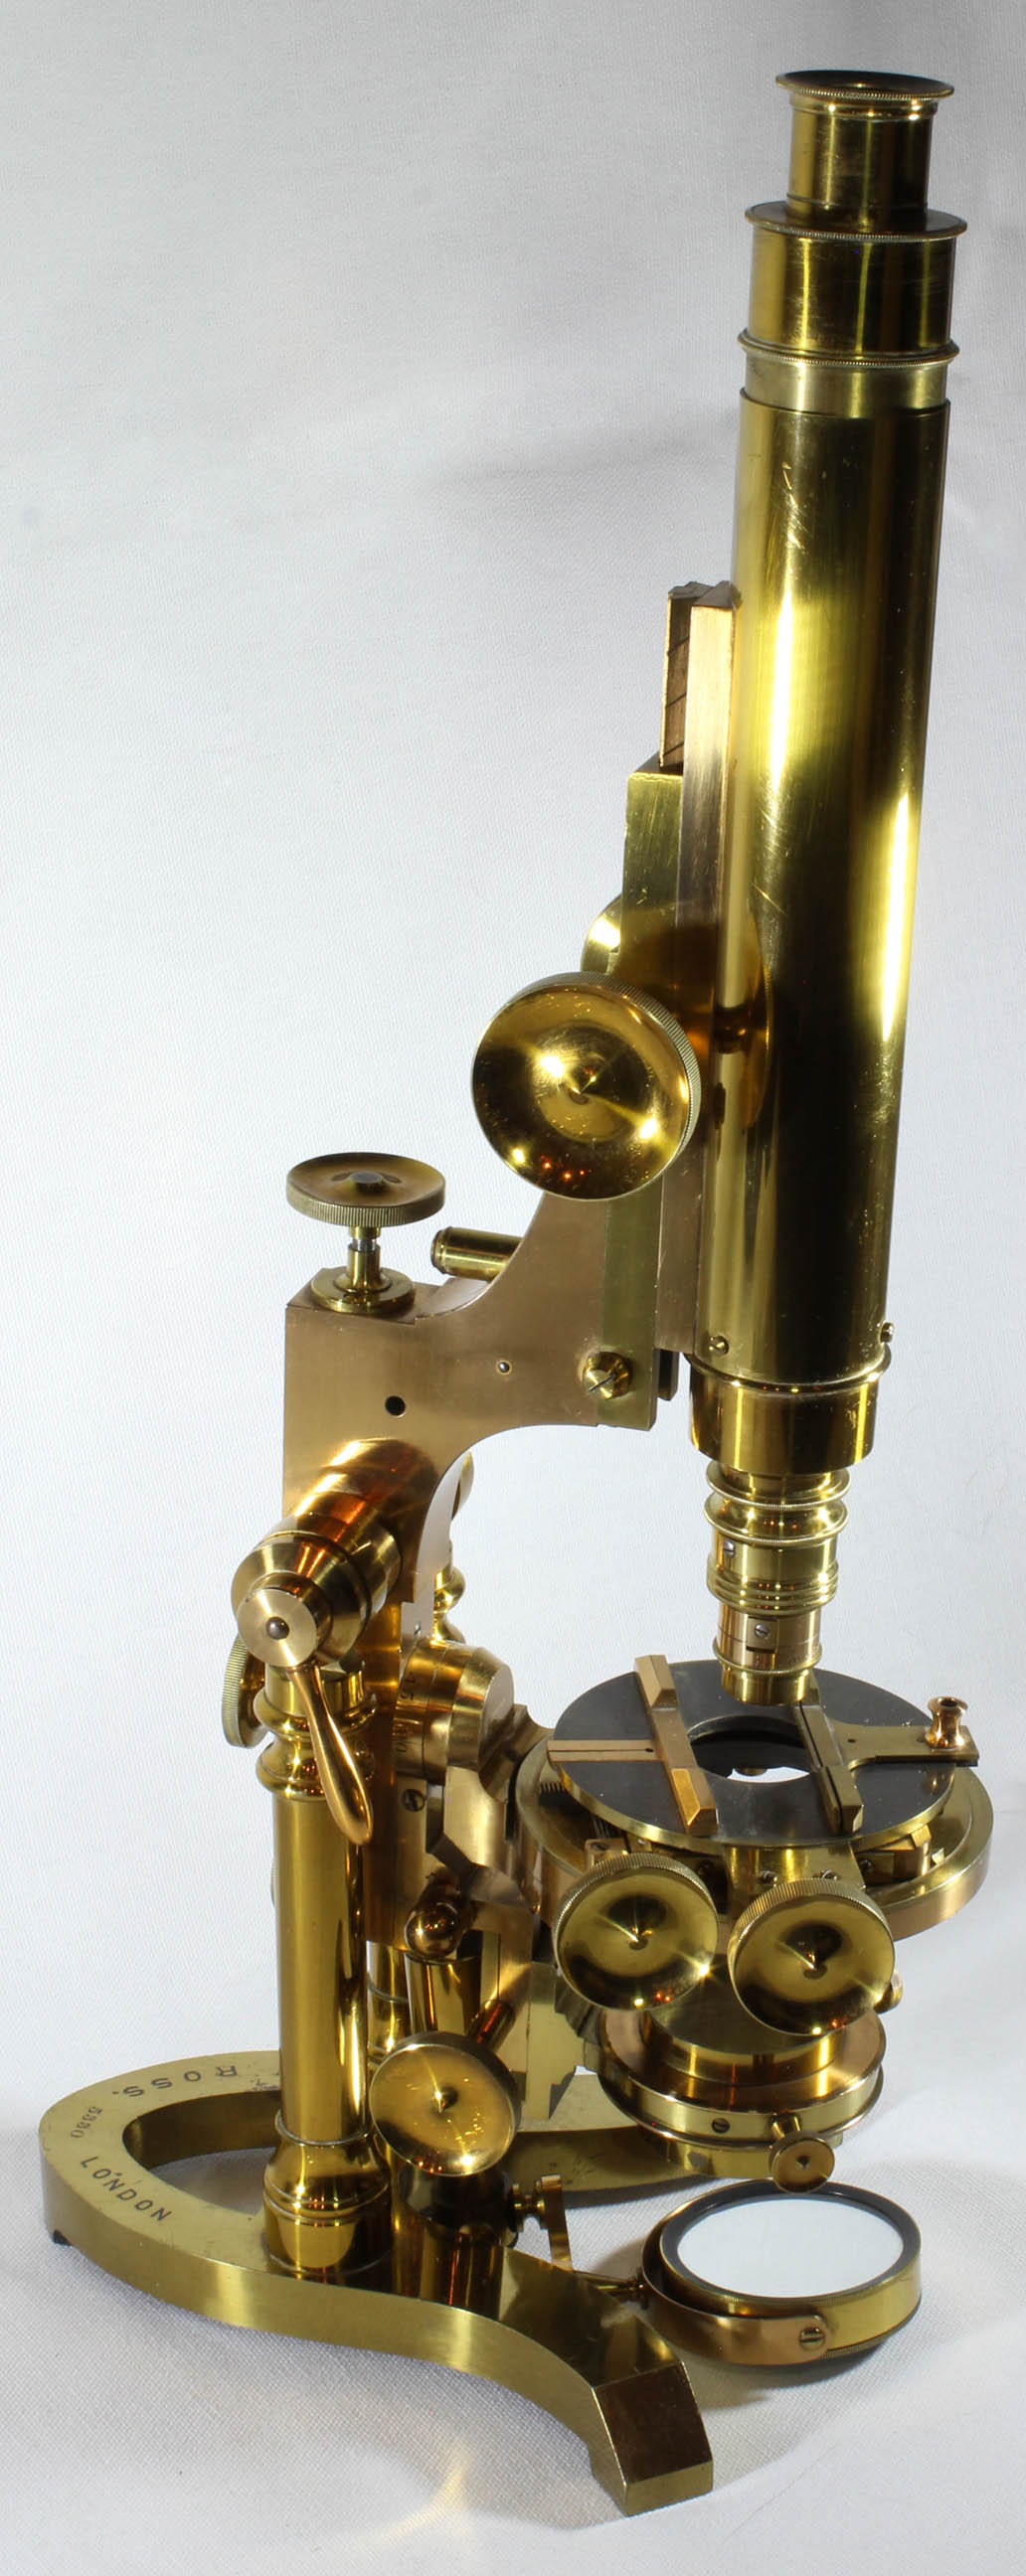 RZ Microscope